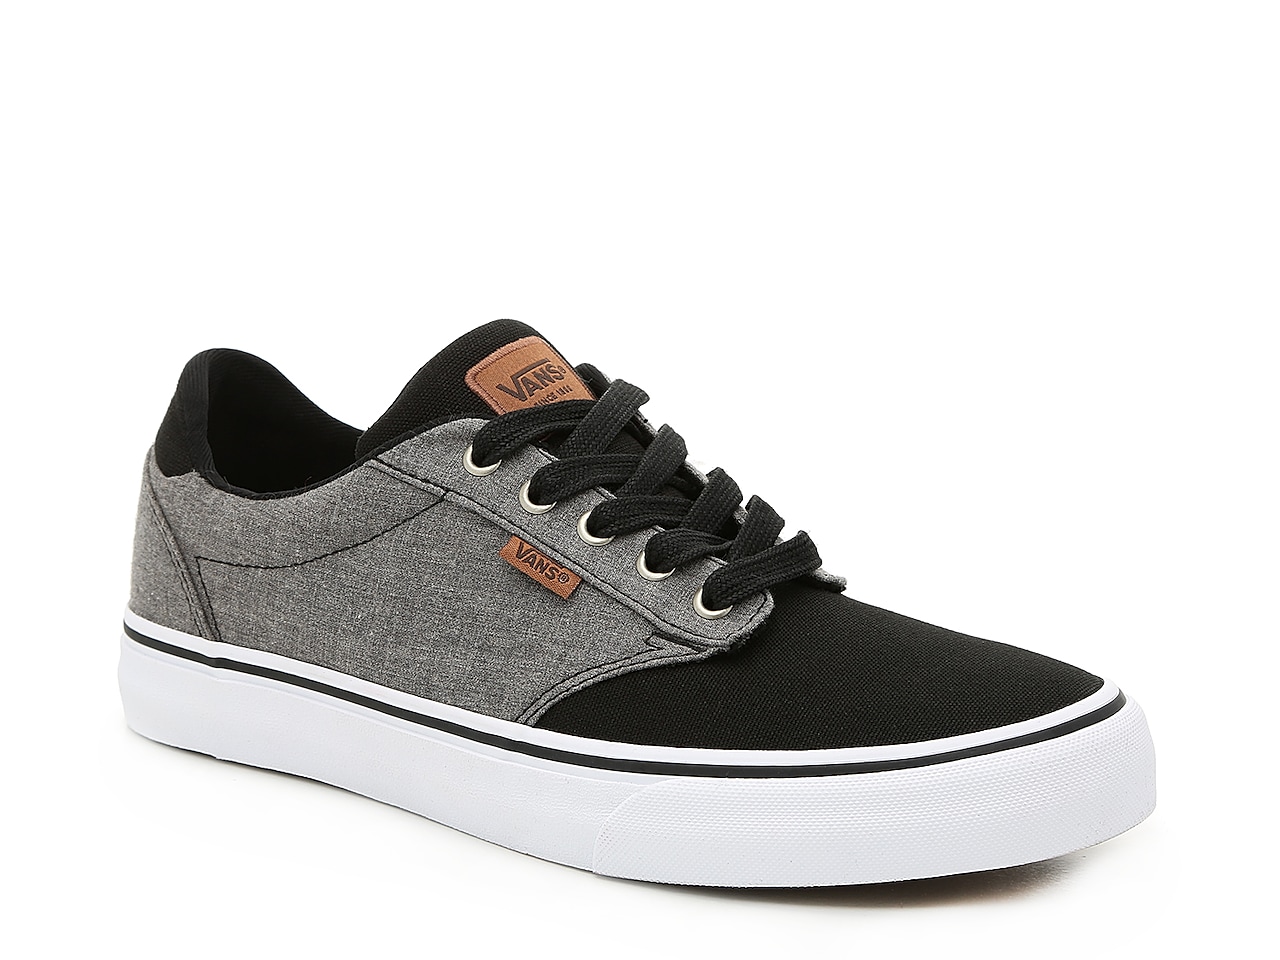 Vans Atwood Deluxe Sneaker - Men's : Color - Black/Grey, Size - 10.5 (448007)